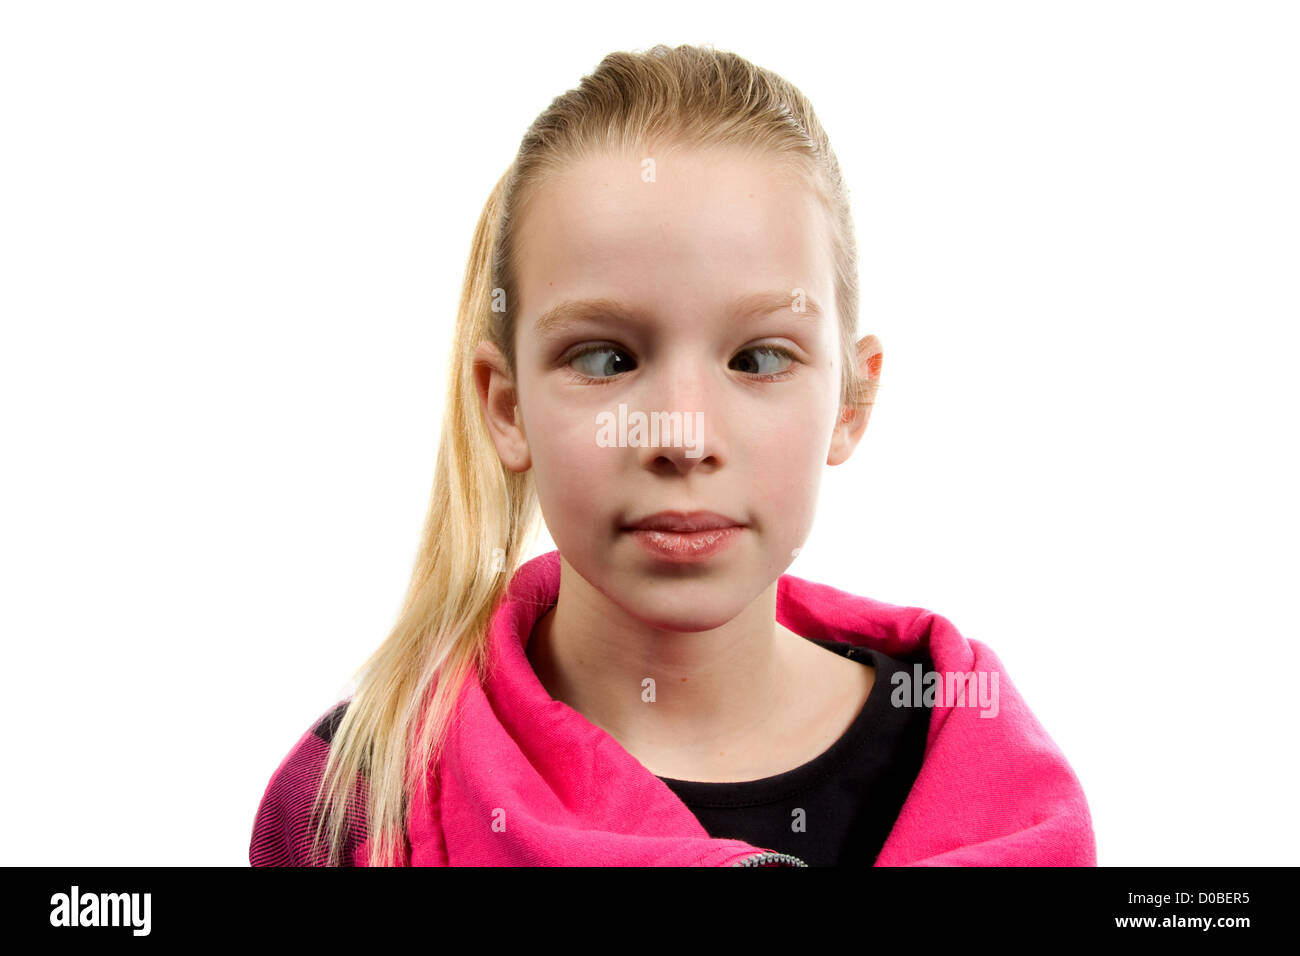 cross-eyed girl isolated on white background Stock Photo